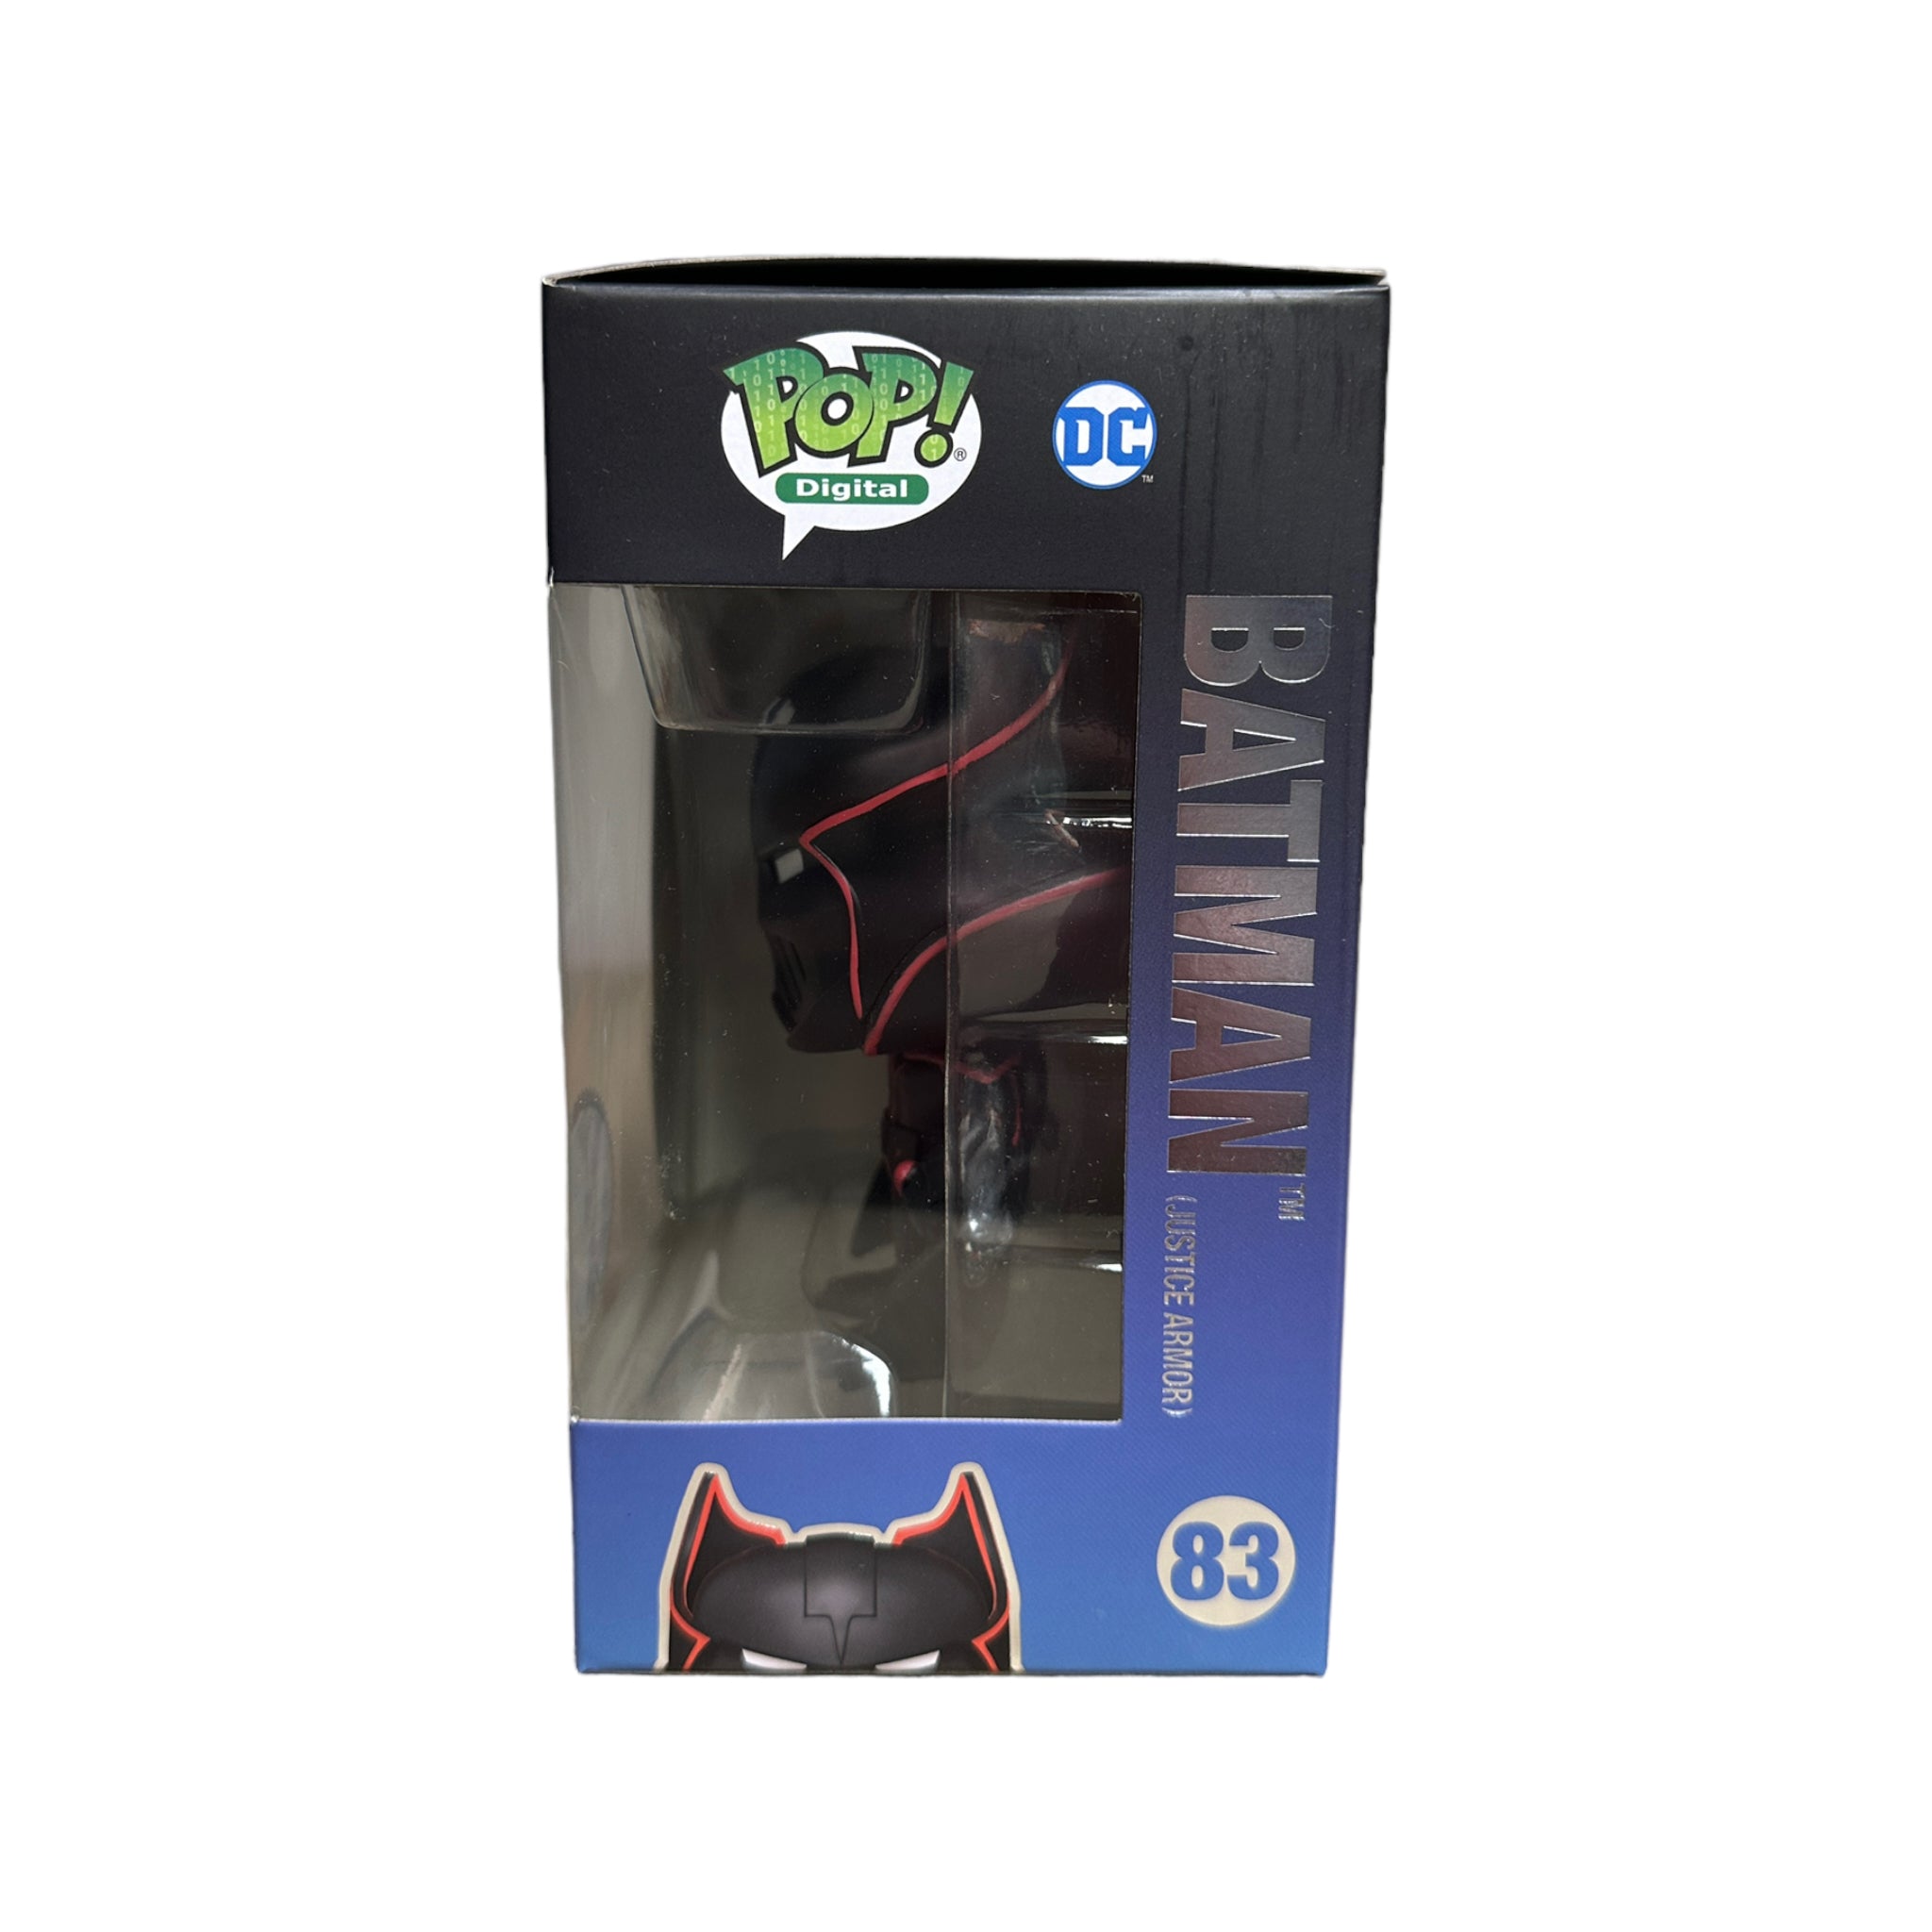 Batman (Justice Armor) #83 Funko Pop! - Batman - NFT Release Exclusive LE4250 Pcs - Condition 8.75/10